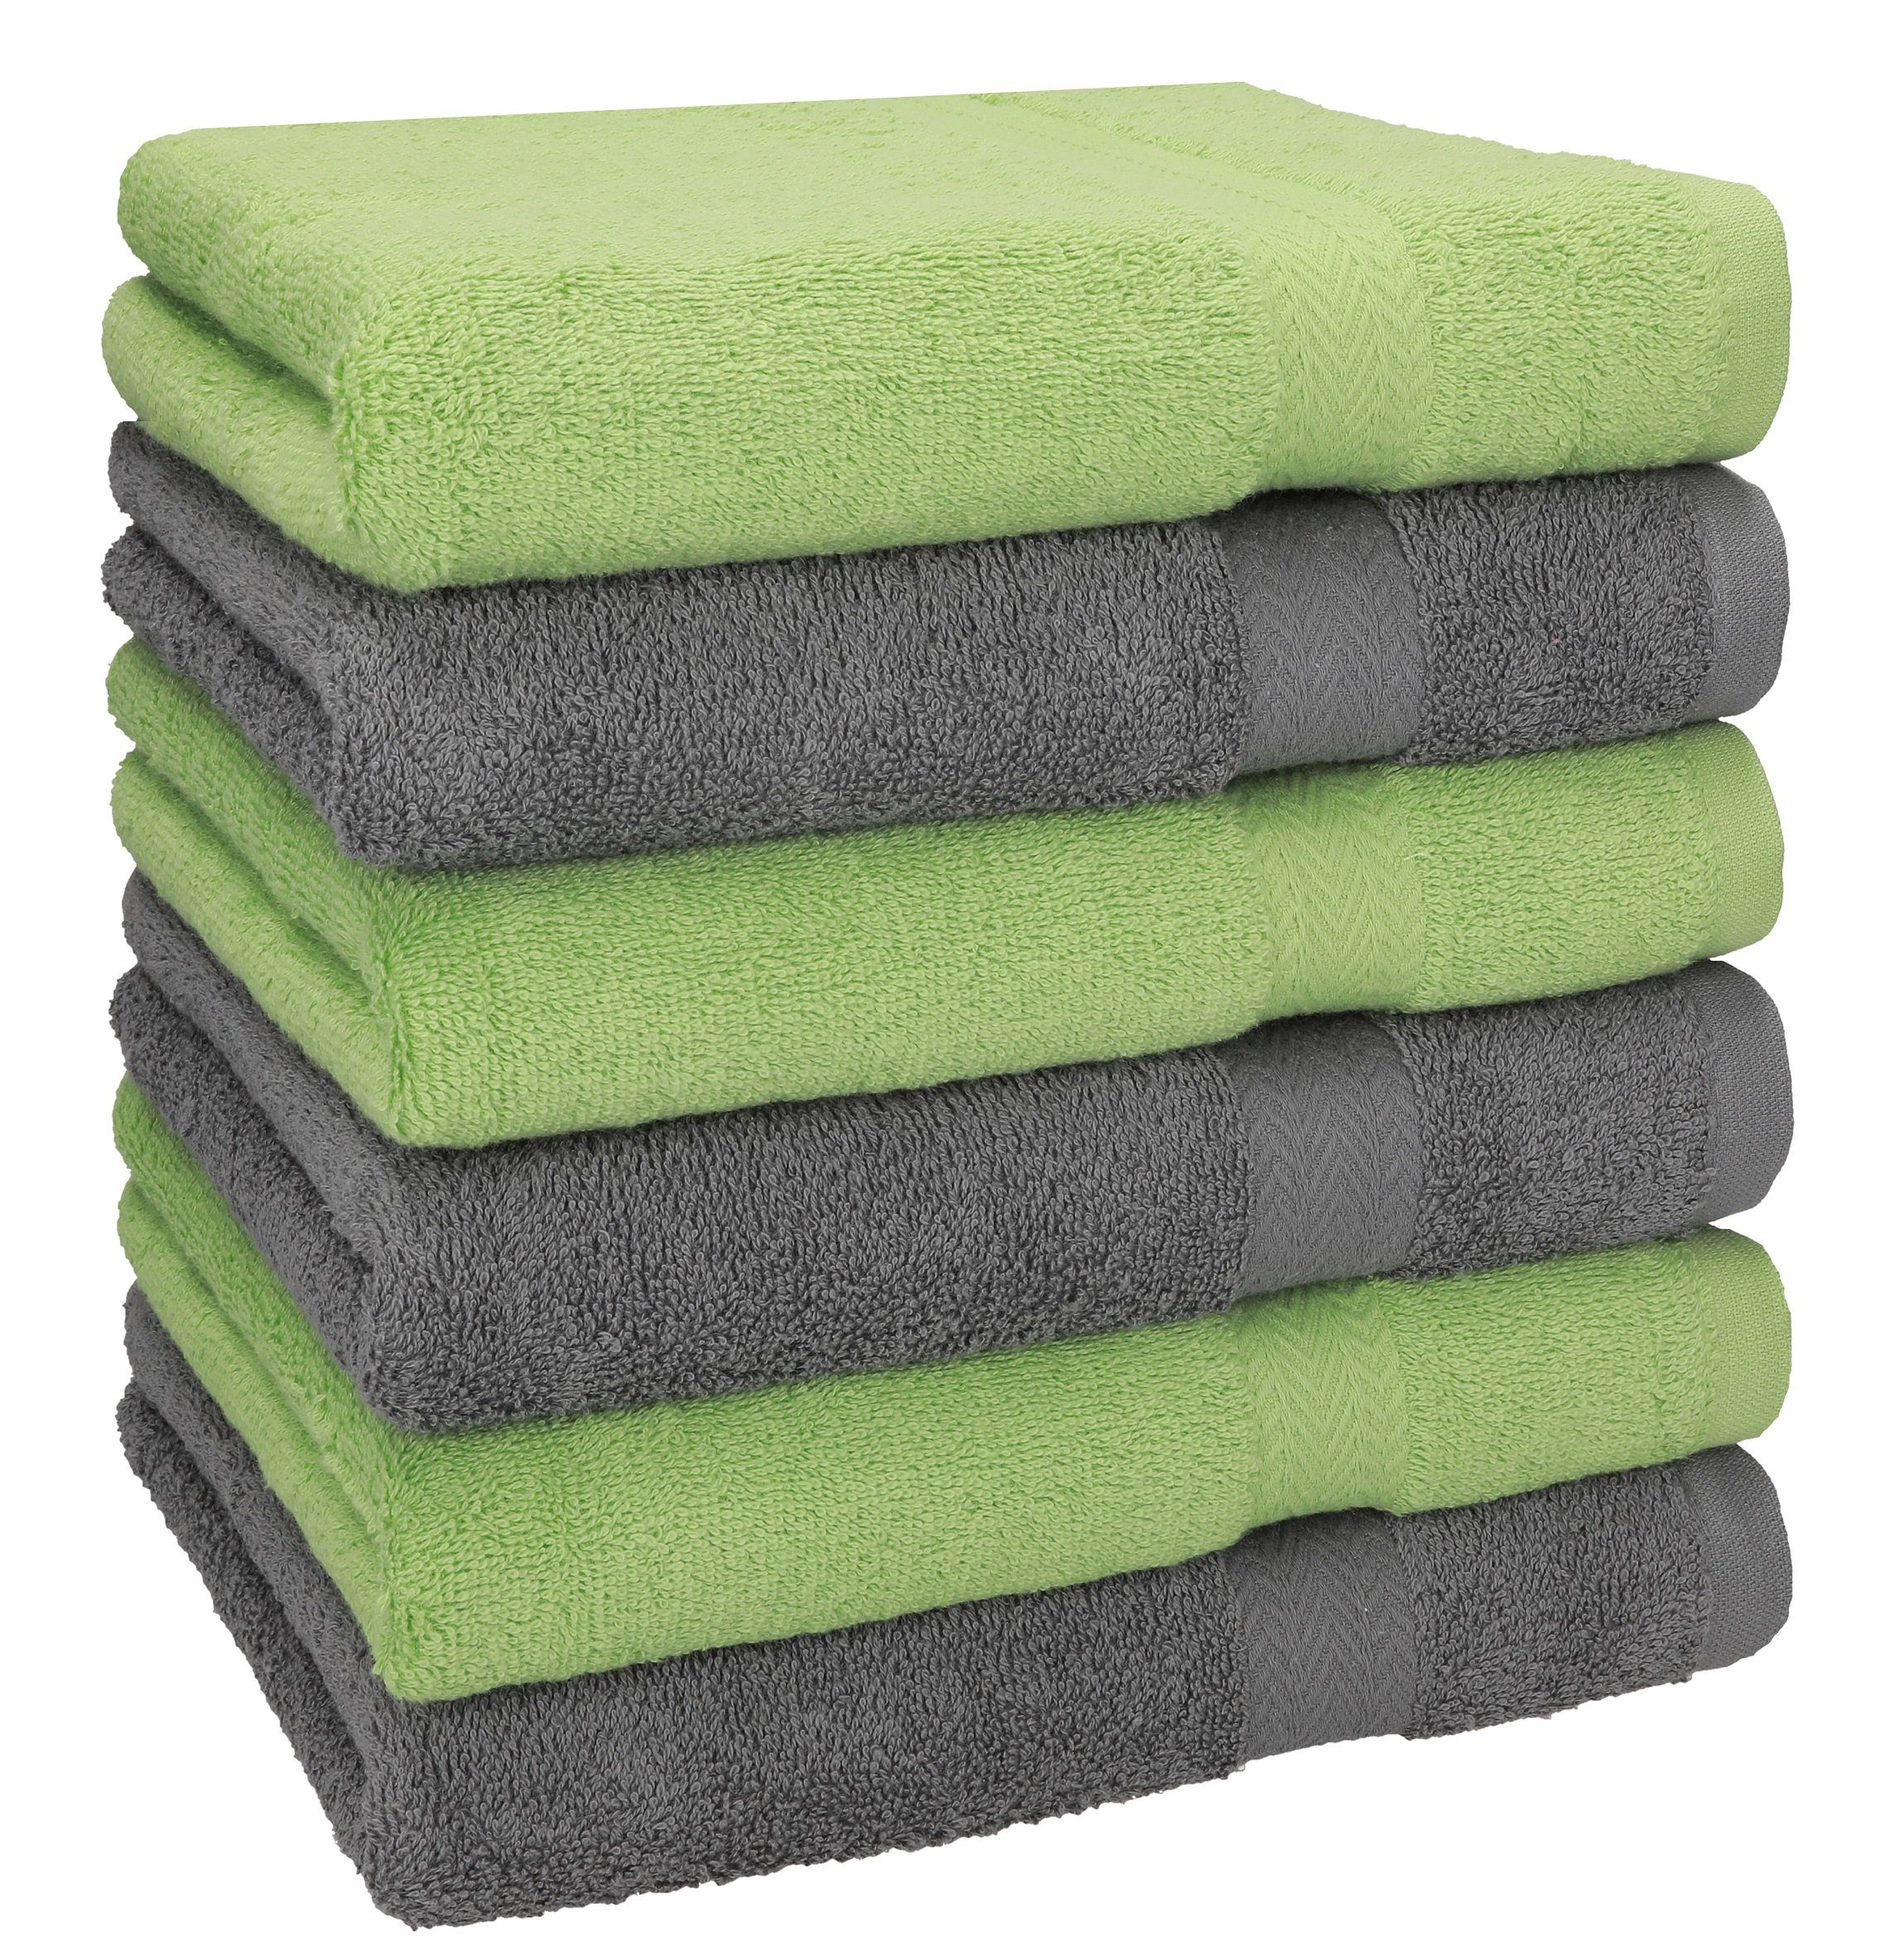 Betz Handtücher 6 Stück Handtücher Größe 50 x 100 cm Premium Handtuch Set 100% Baumwolle Farbe apfelgrün/anthrazit grau, 100% Baumwolle (6-St)